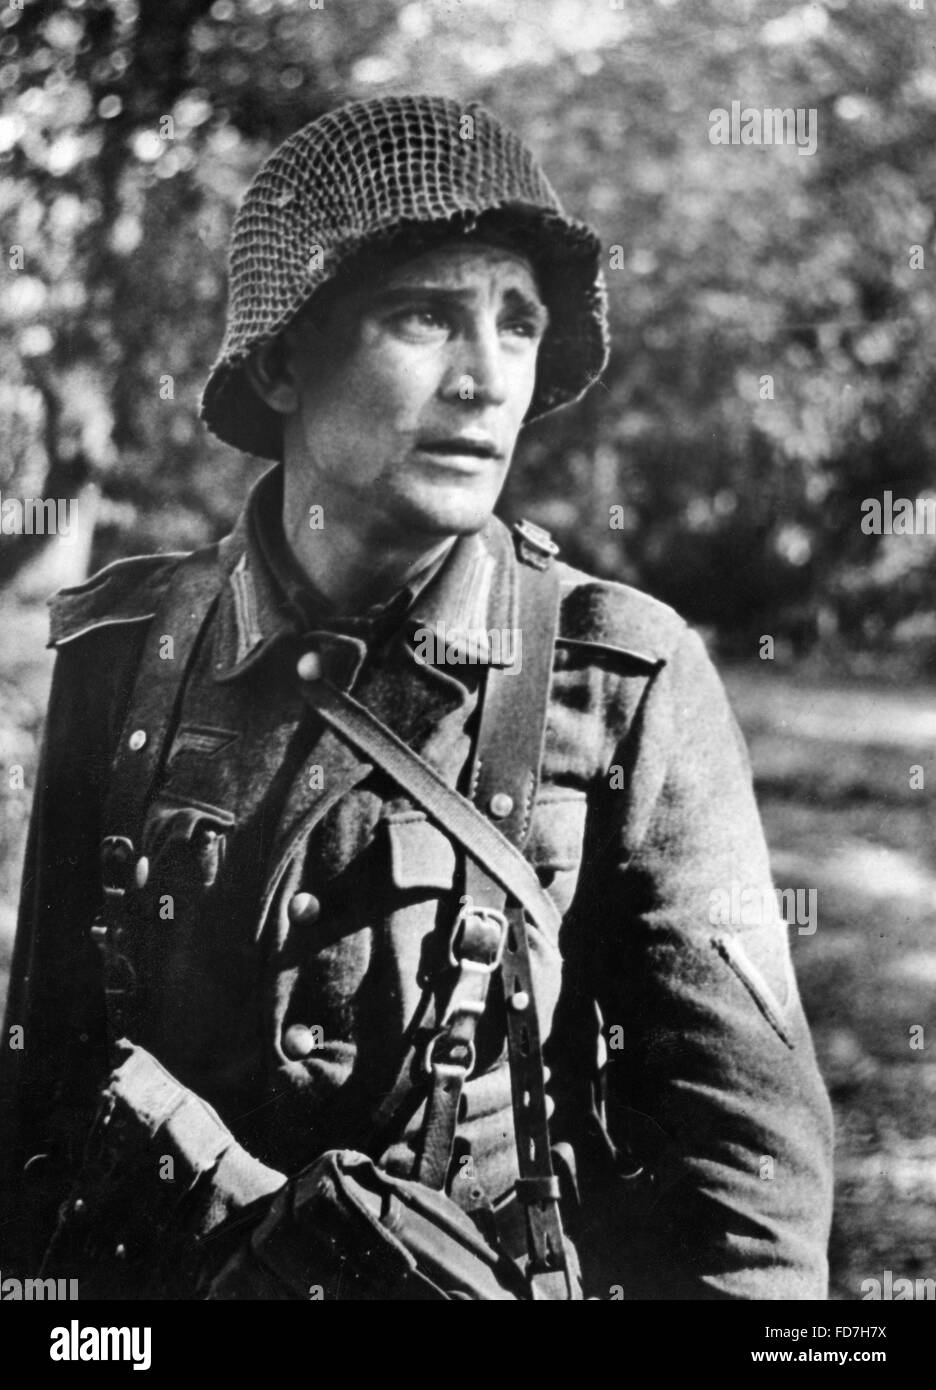 Soldat de la Wehrmacht sur le front de l'Ouest, 1944 Banque D'Images